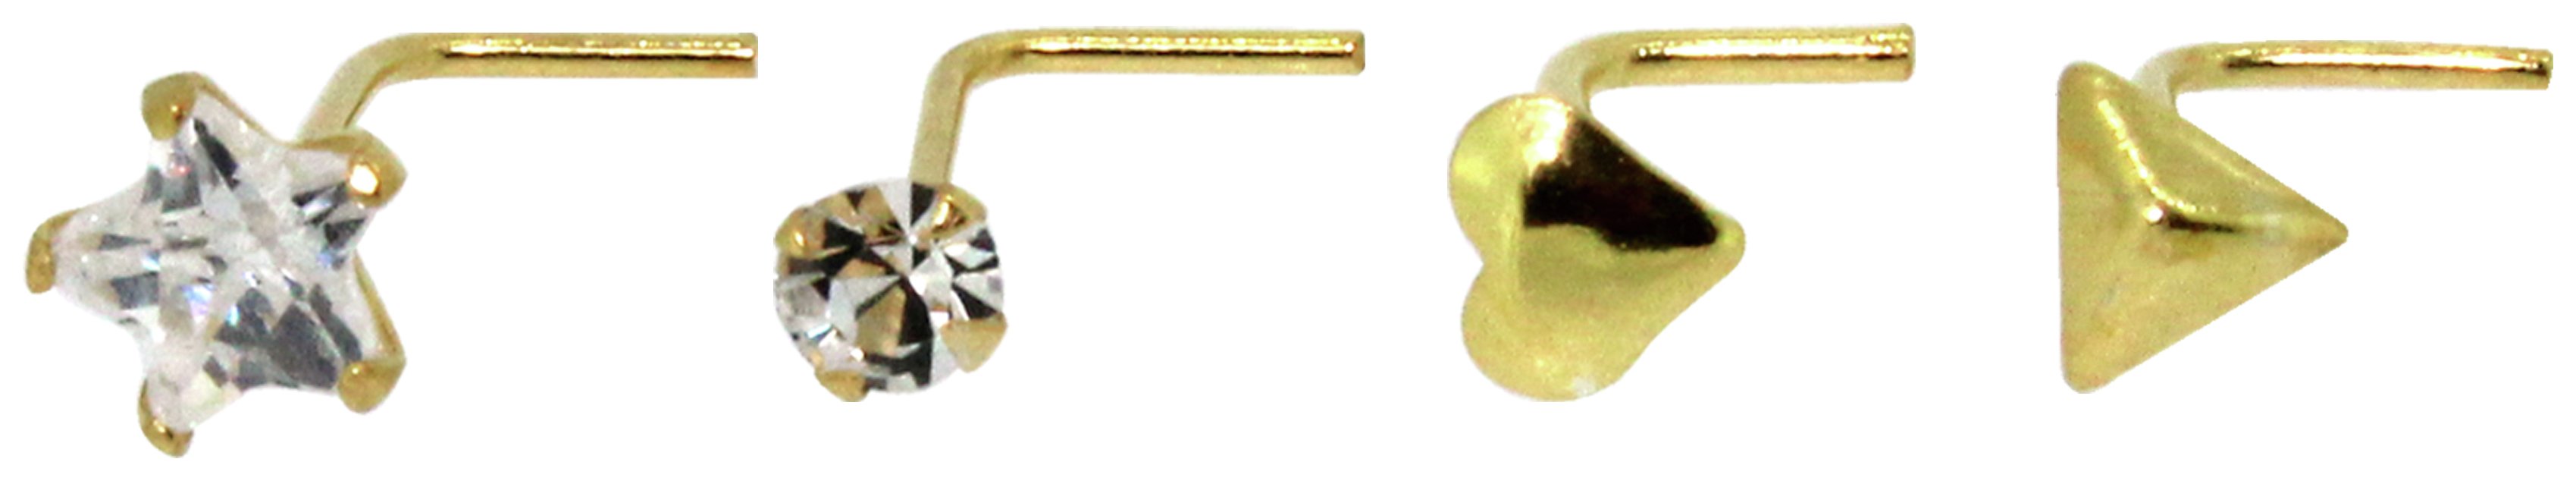 Link Up 9ct Gold Crystal Set Nose Studs - Set of 4